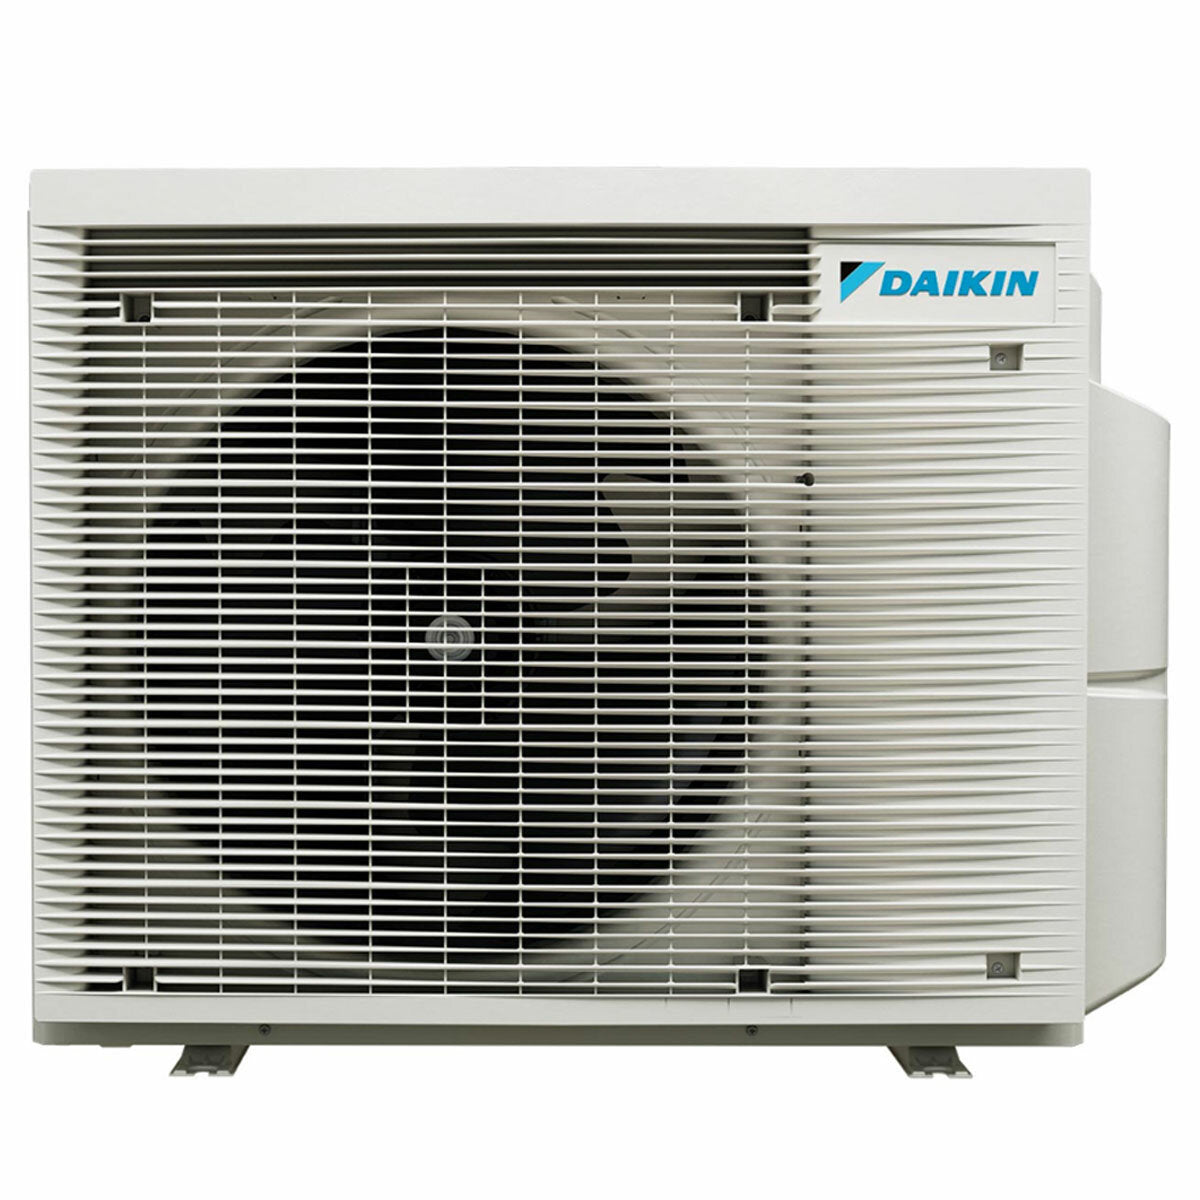 Daikin Emura 3 trial split air conditioner 9000+9000+18000 BTU inverter A+ wifi outdoor unit 6.8 kW Silver